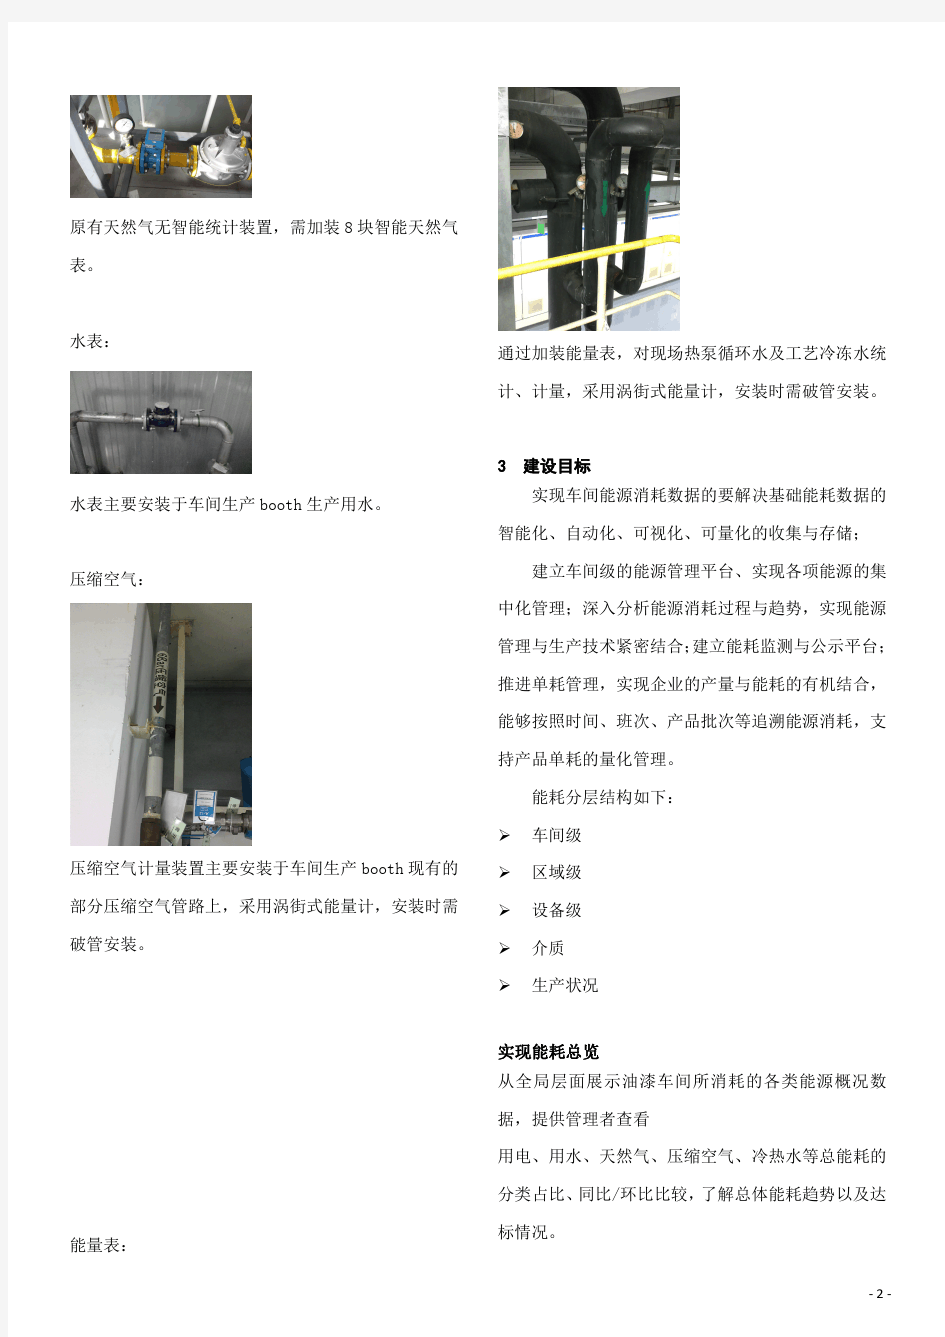 工厂能源管理系统在上海通用汽车工厂的项目应用总结